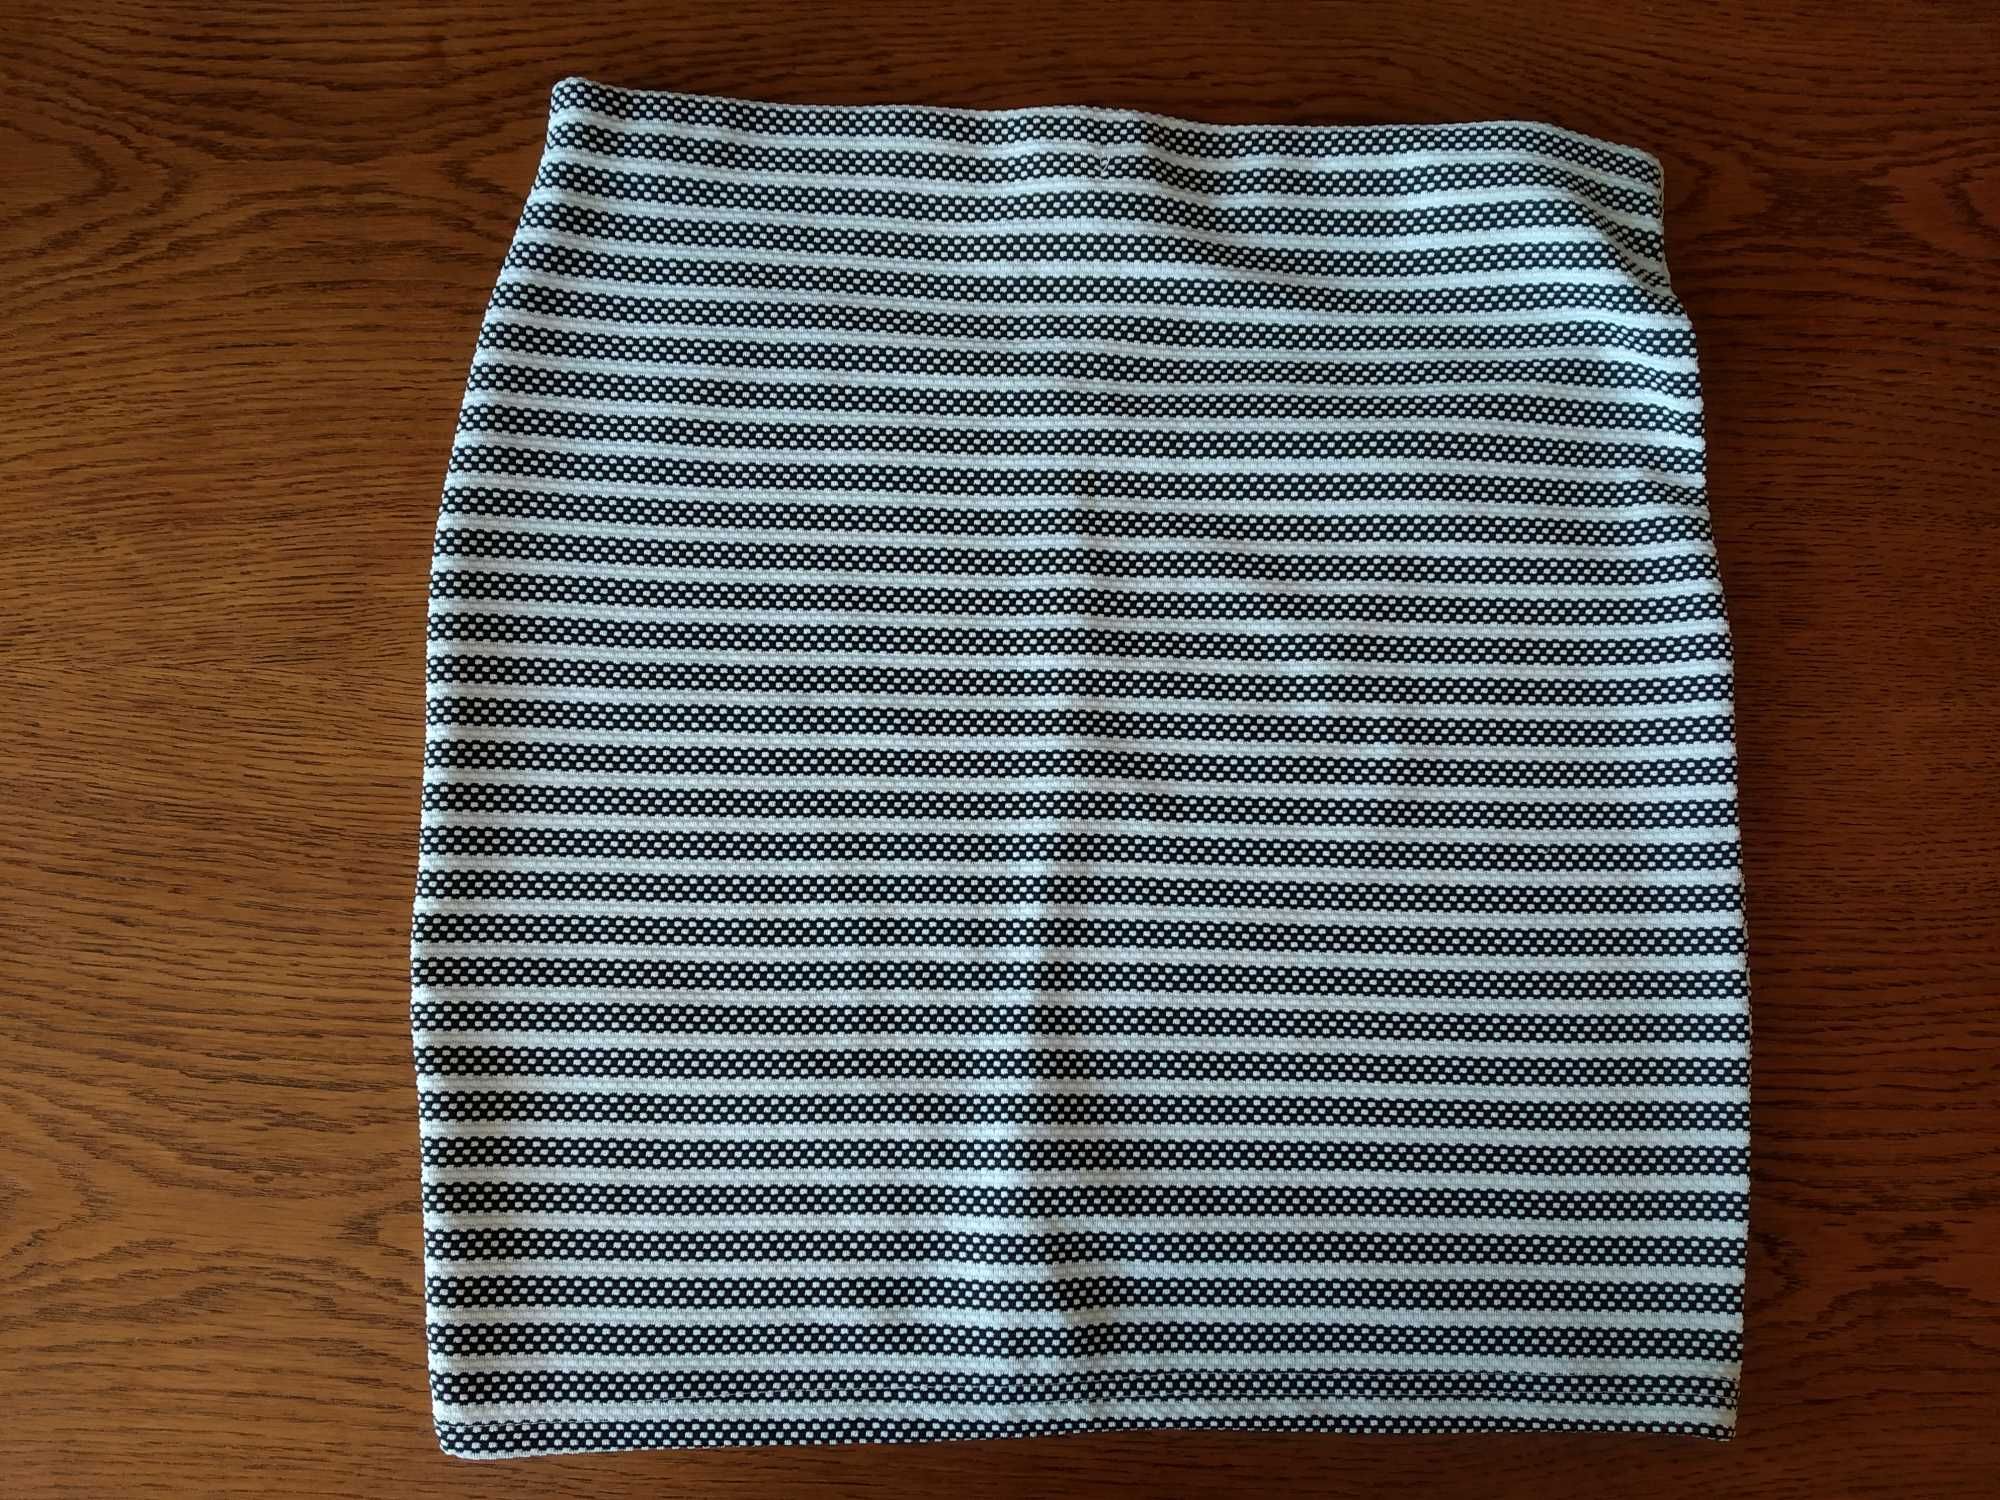 Lekka spódnica mini w paski czarno-białe XL